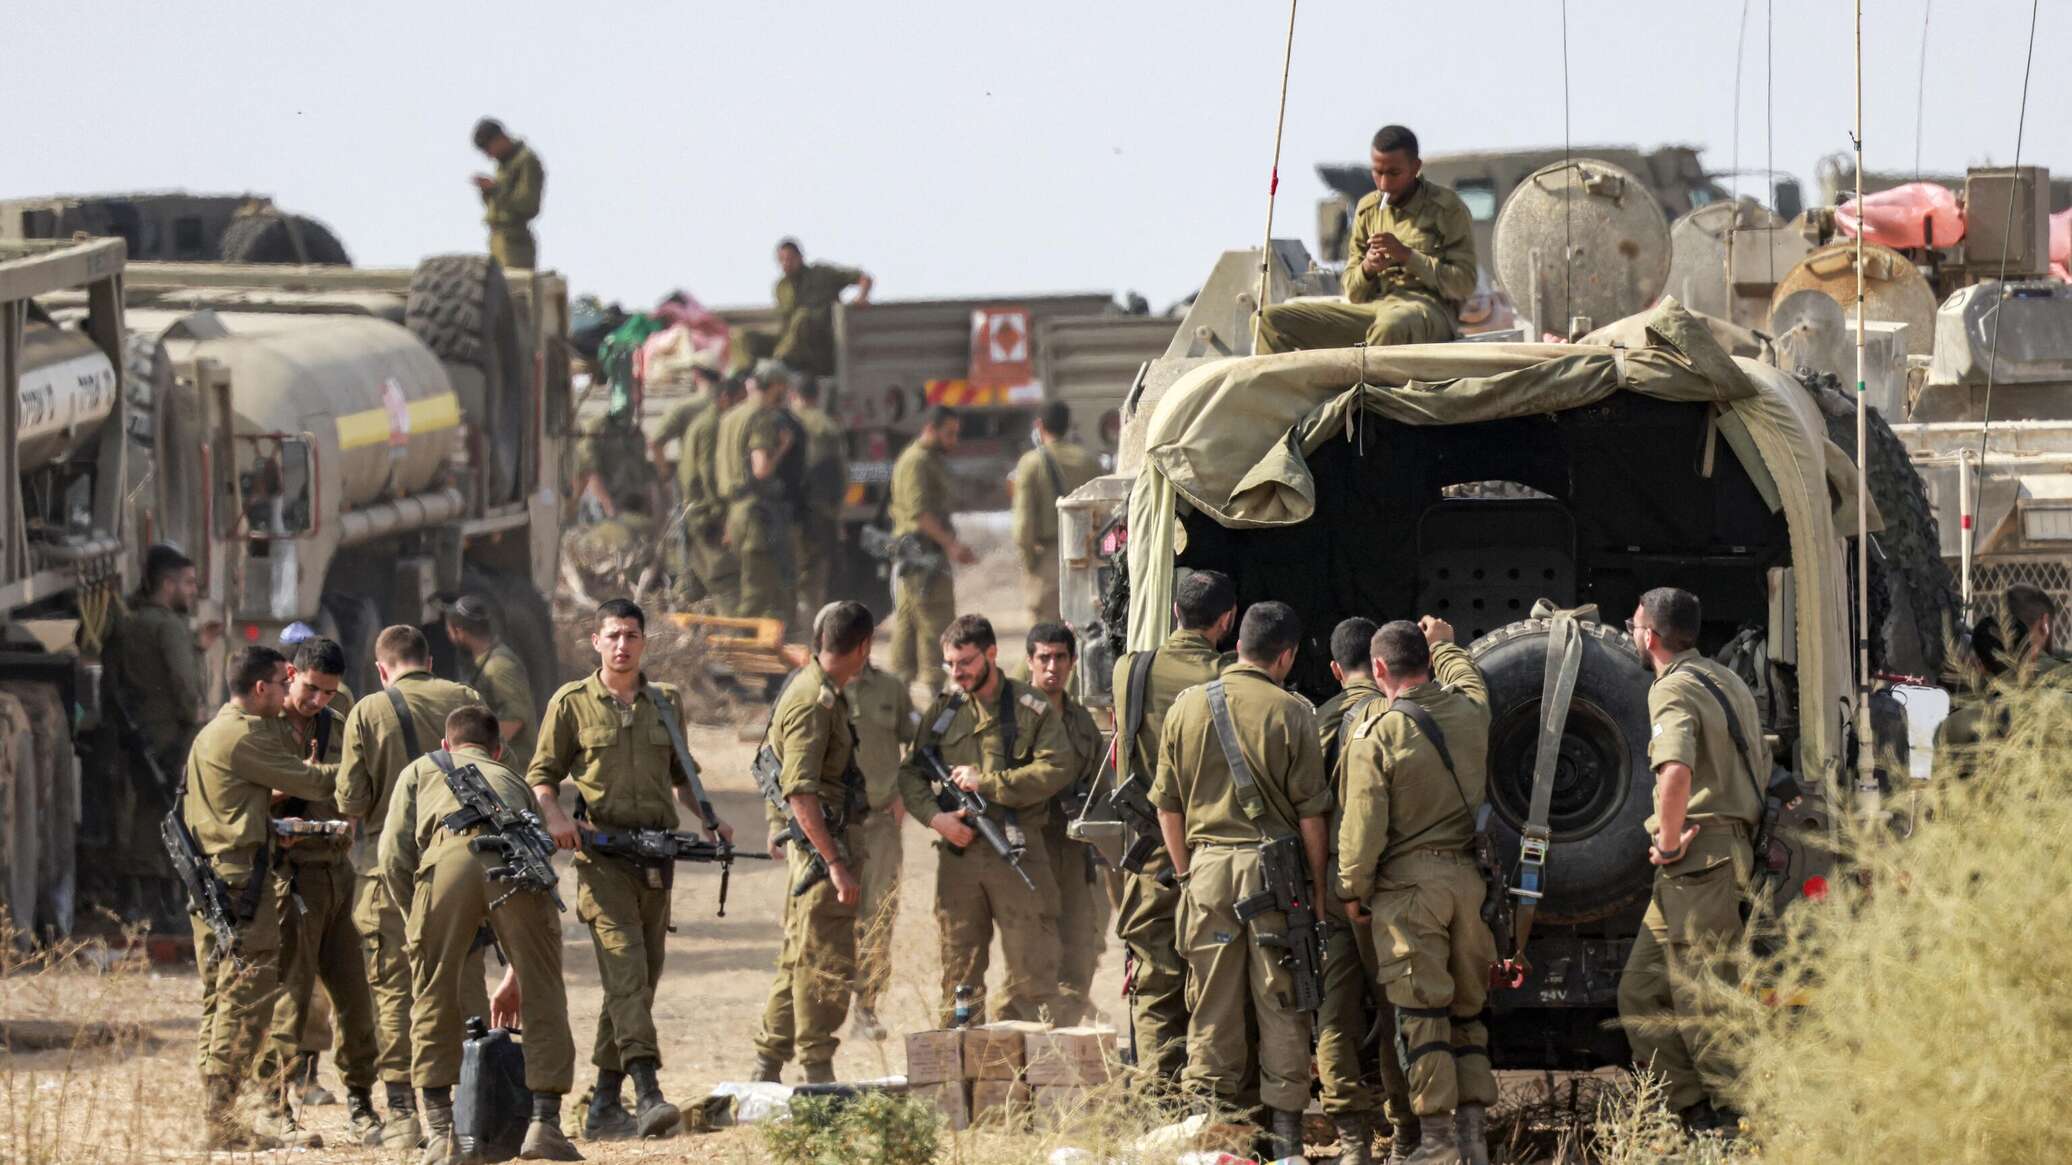 إعلام: إسرائيل تخسر يوميا في الحرب 246 مليون دولار وأجور جنود الاحتياط 2.5 مليار